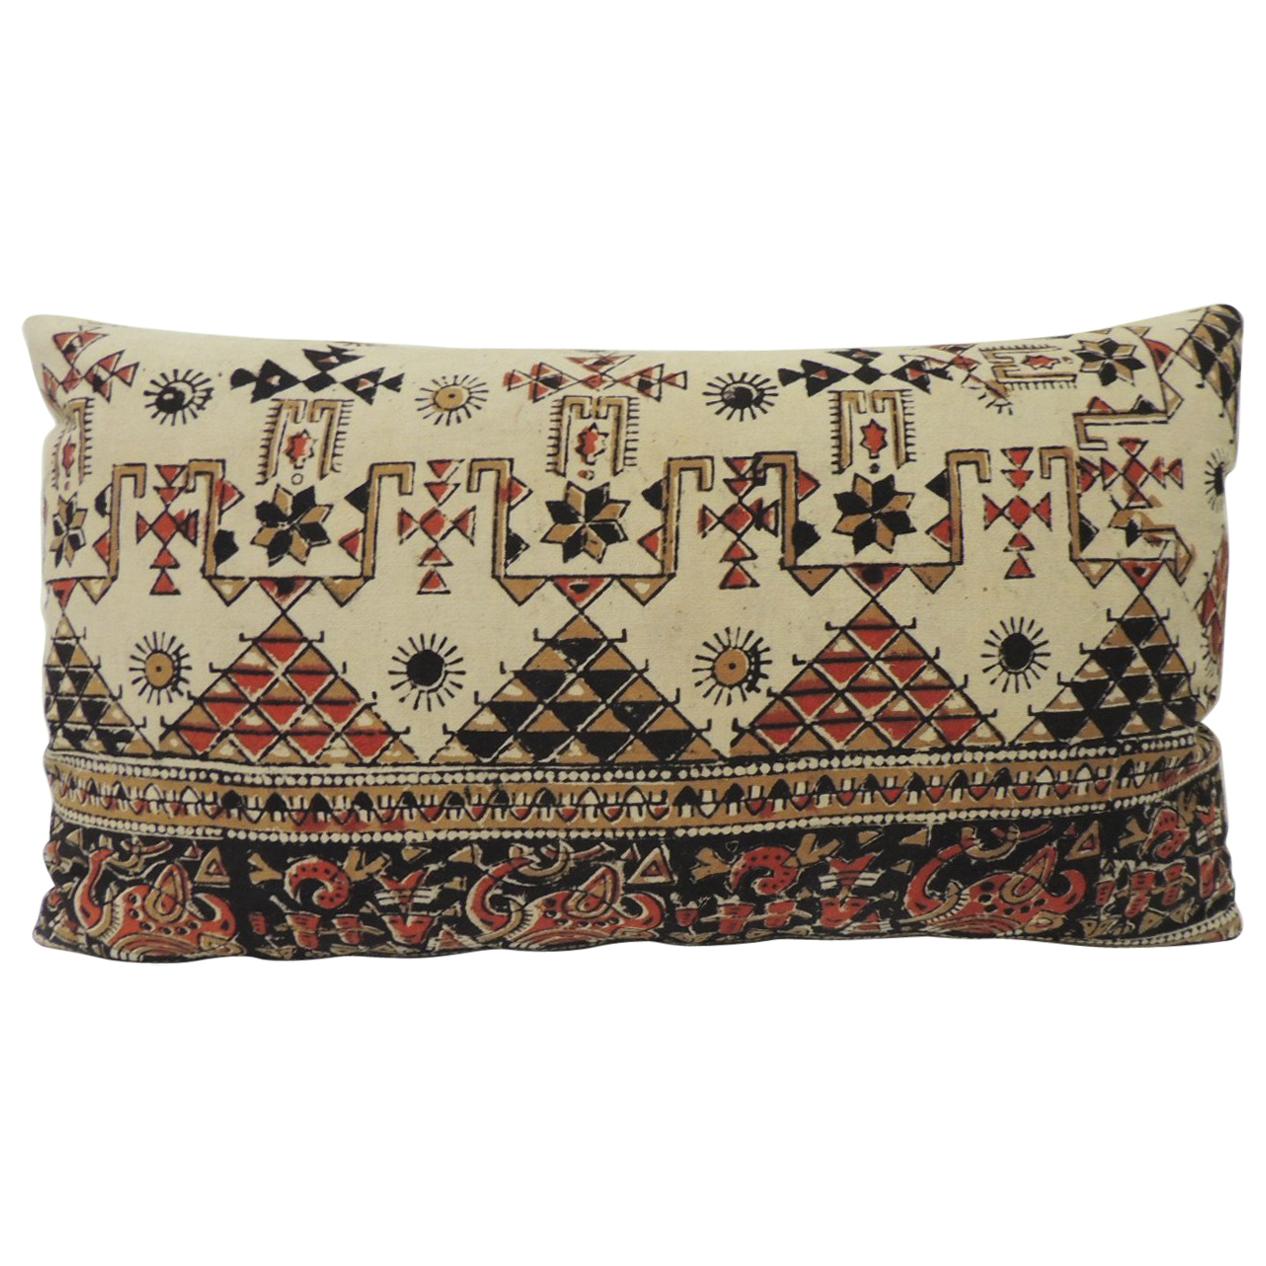 Vintage Persian Hand-Blocked Kalamkari Lumbar Decorative Throw Pillow